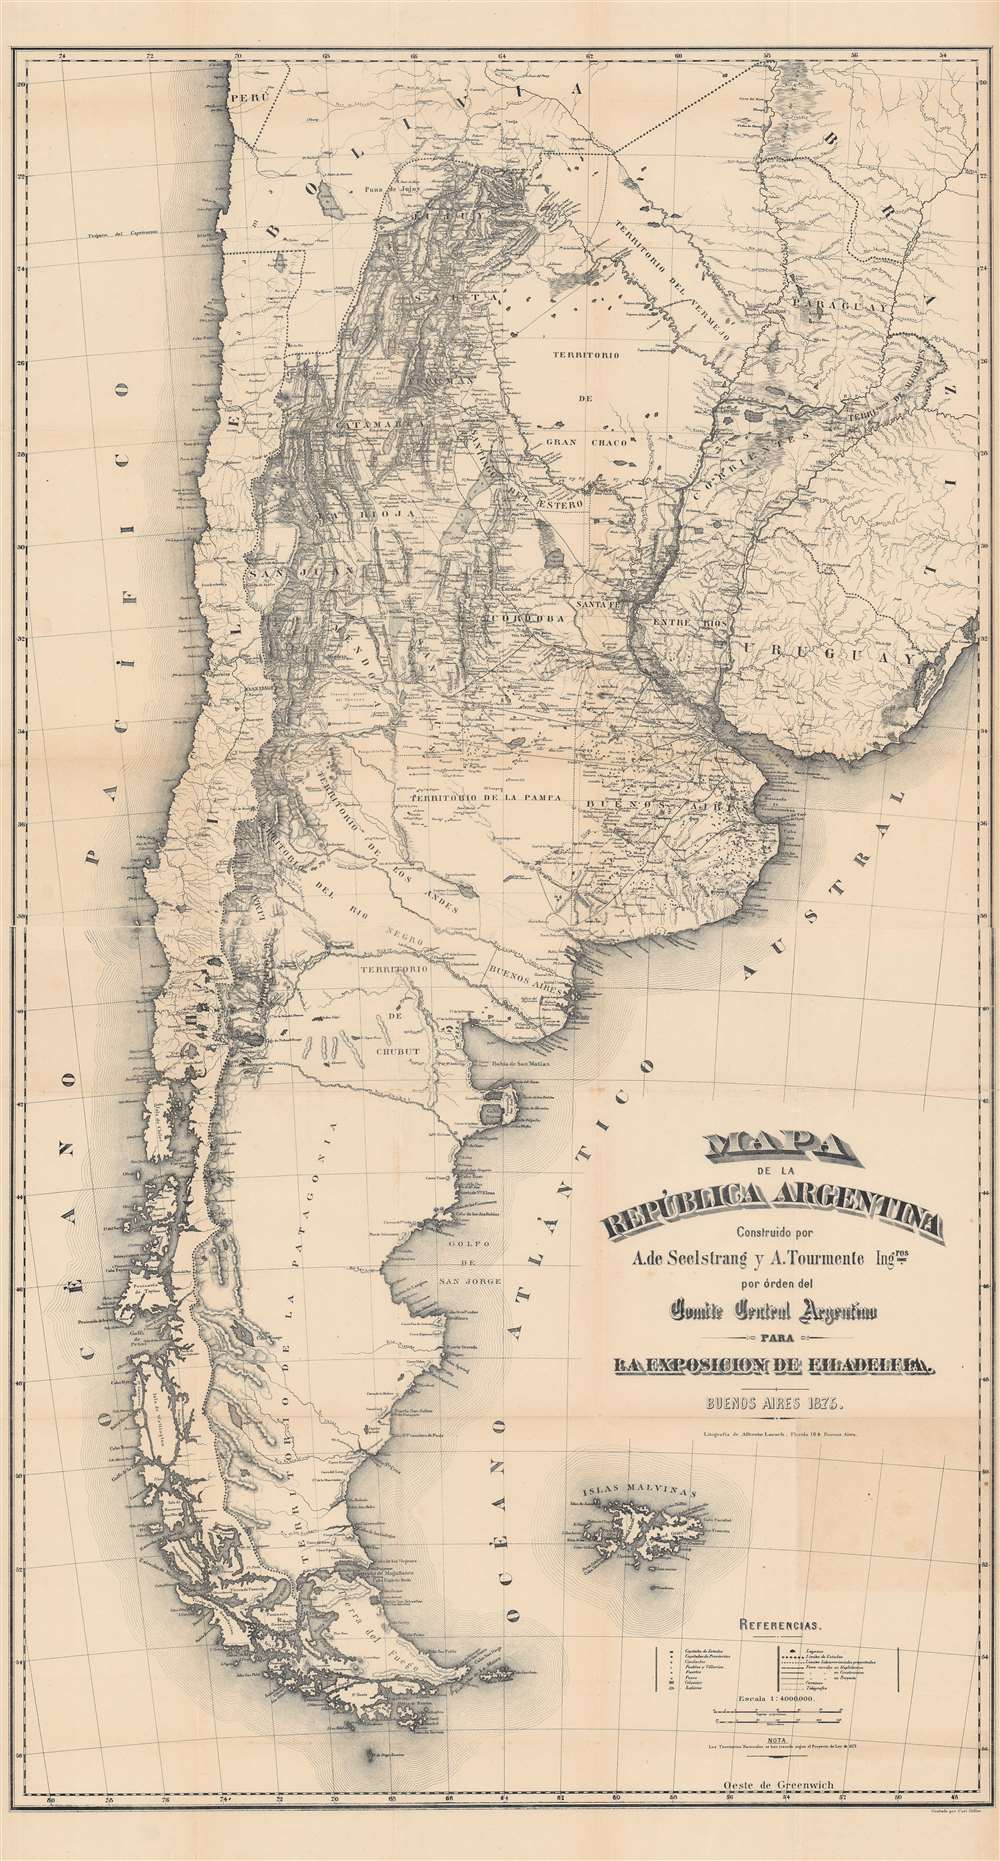 Mapa de la Republica Argentina. - Main View